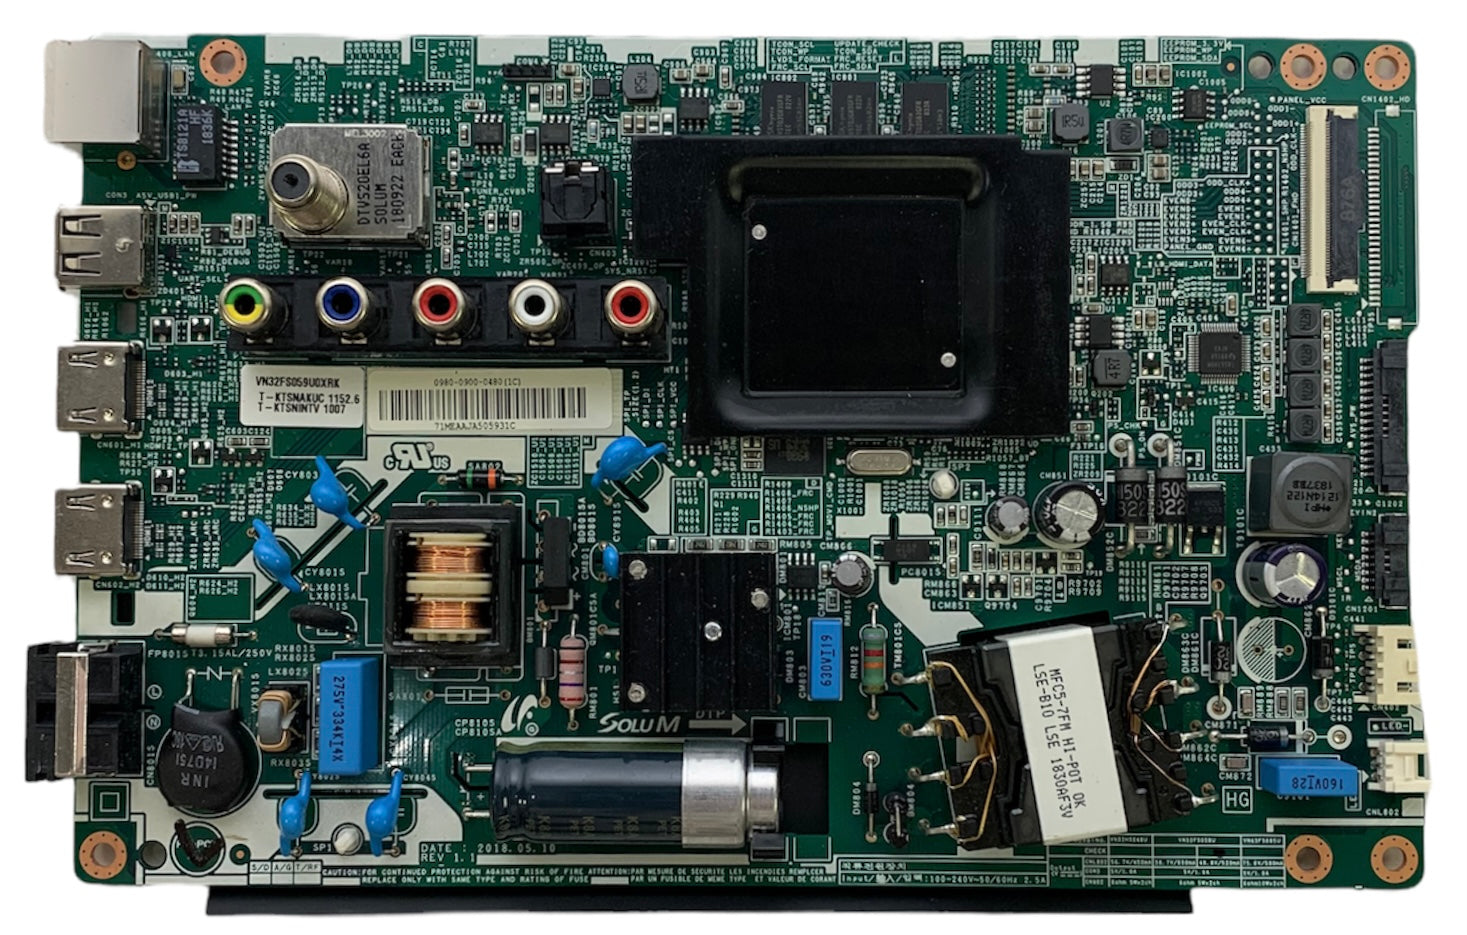 Samsung BN81-16925A (098009000480) Main Board/Power Supply for UN32N5300AFXZA